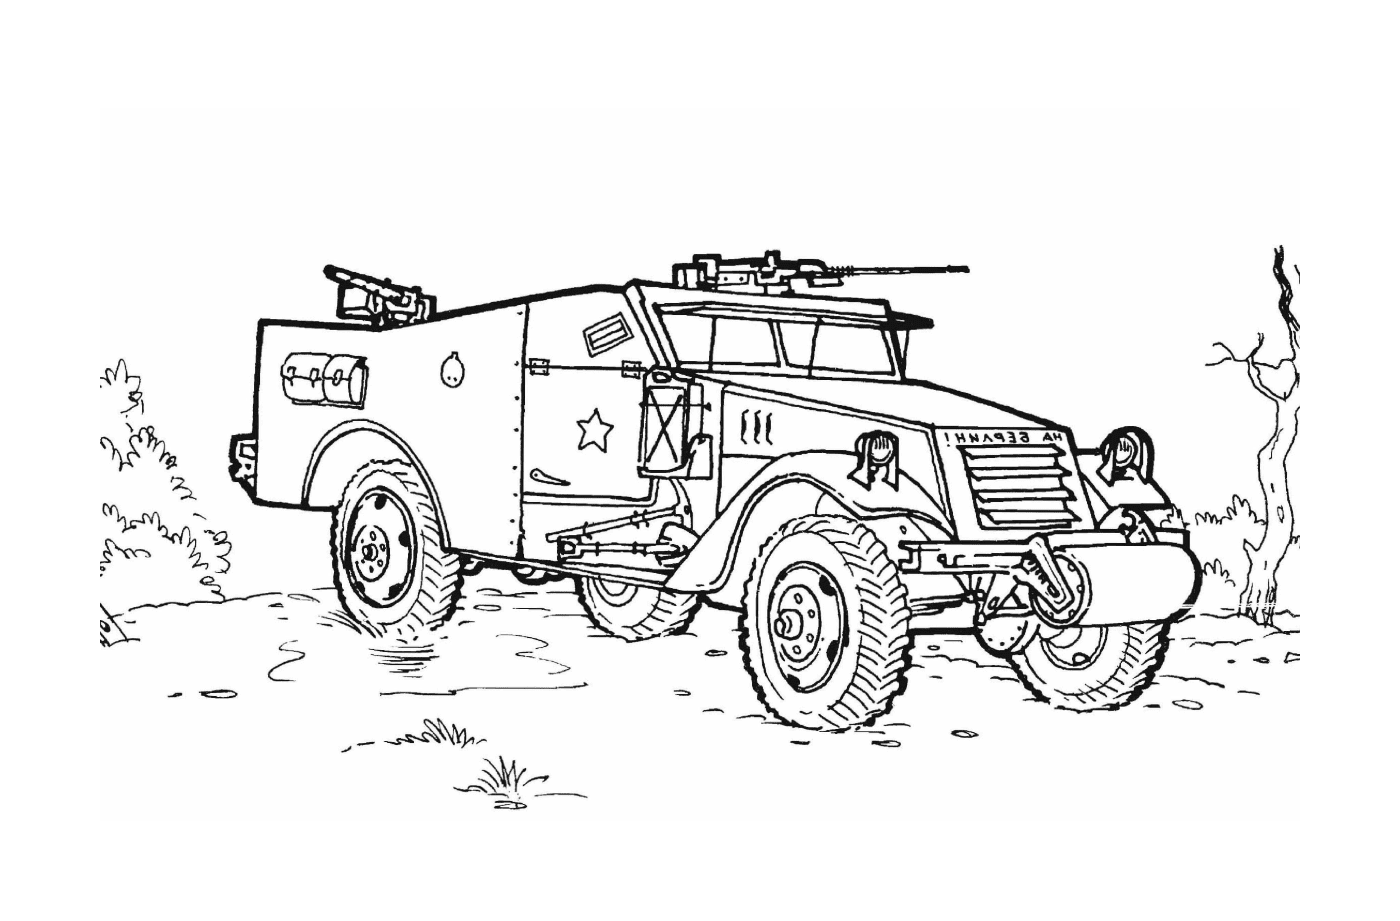  Военное автотранспортное средство с оружием: старый военный автомобиль, спроектированный 